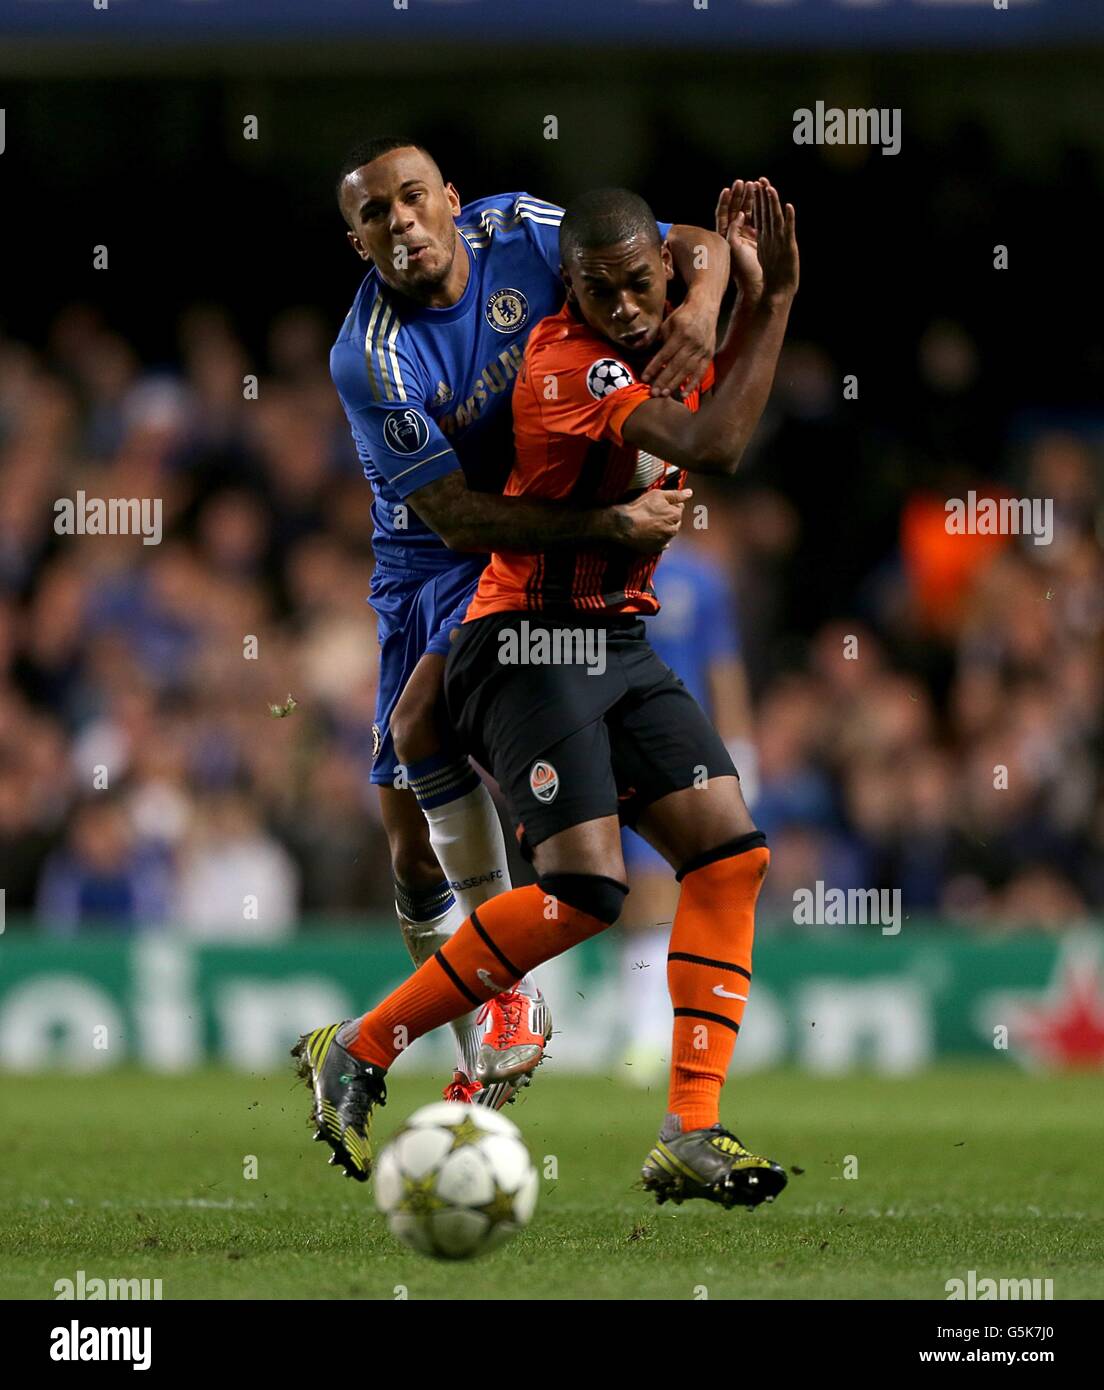 Chelsea's Ryan Bertrand (left) and Shakhtar Donetsk's Luis Fernandinho in action Stock Photo